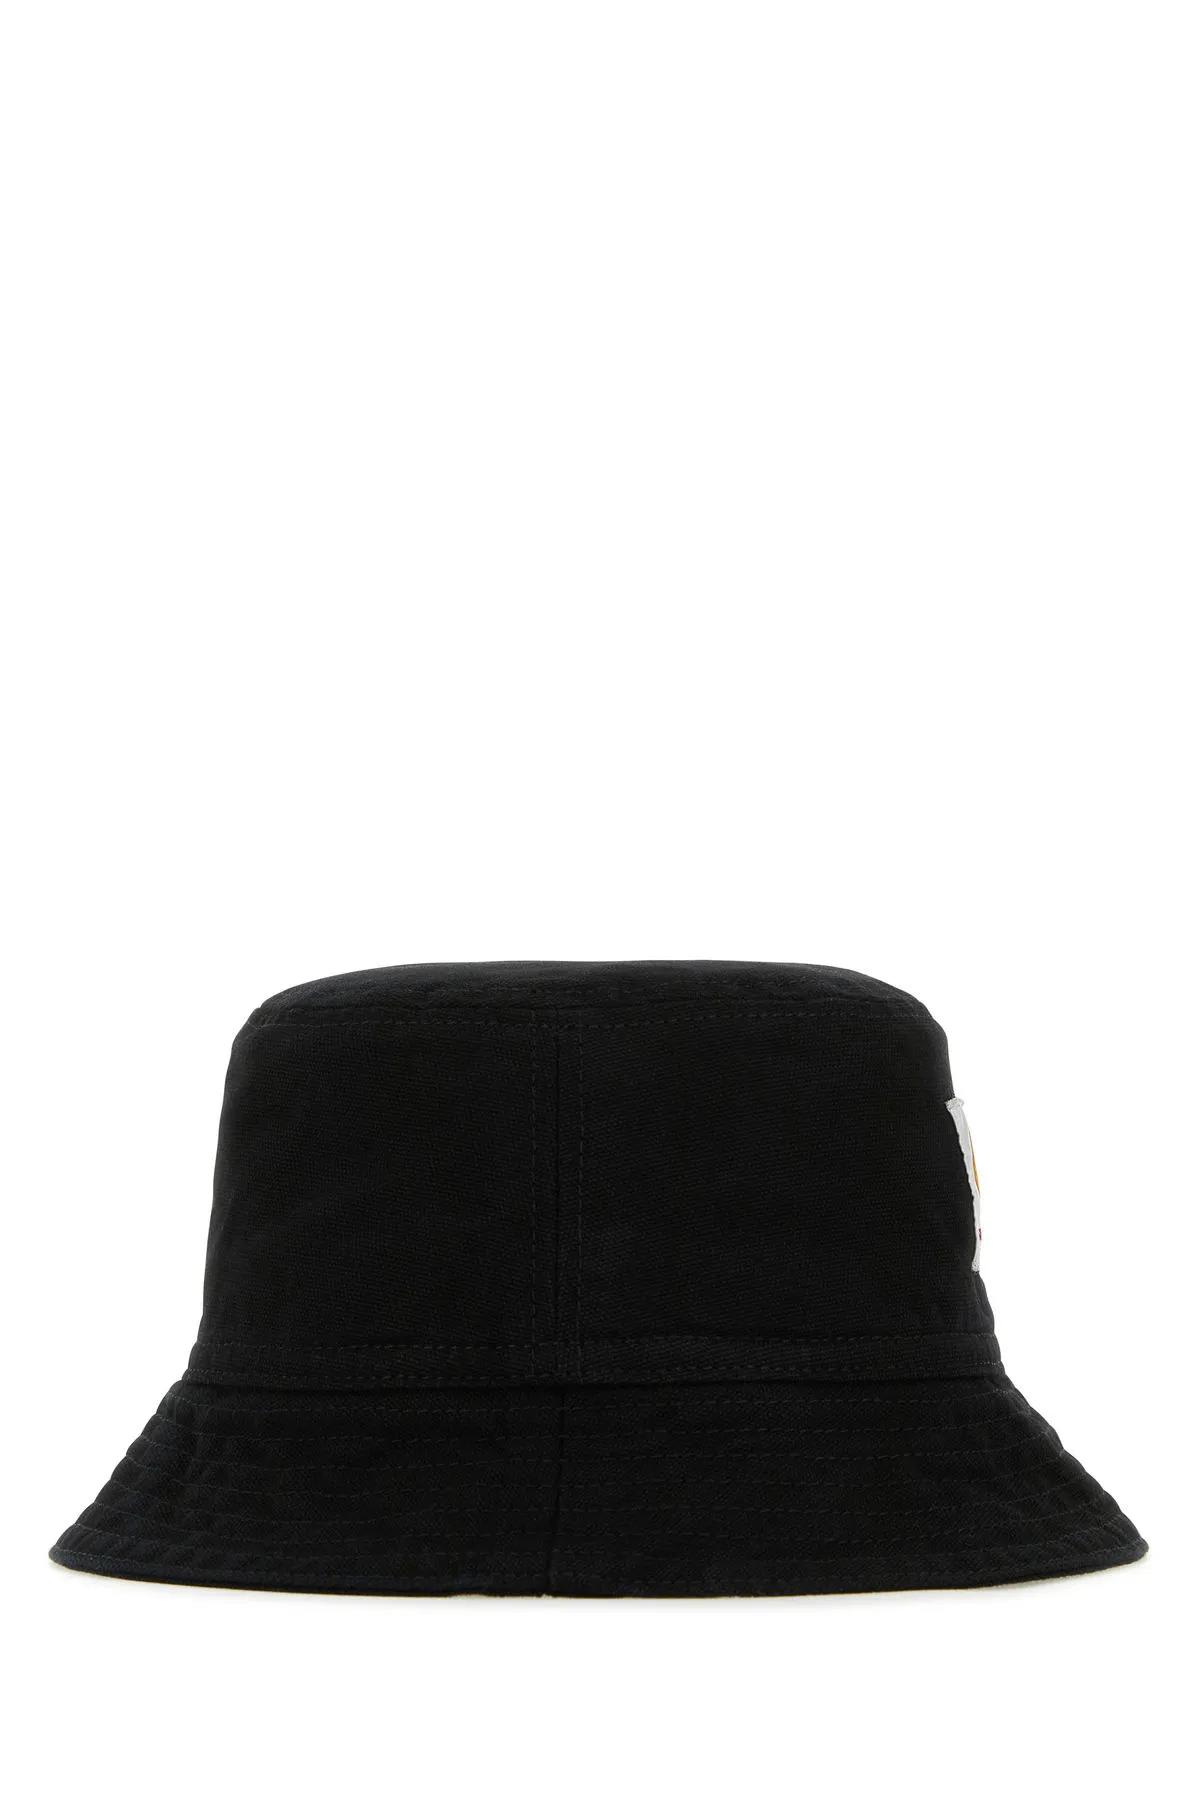 Shop Carhartt Black Cotton Bayfield Bucket Hat